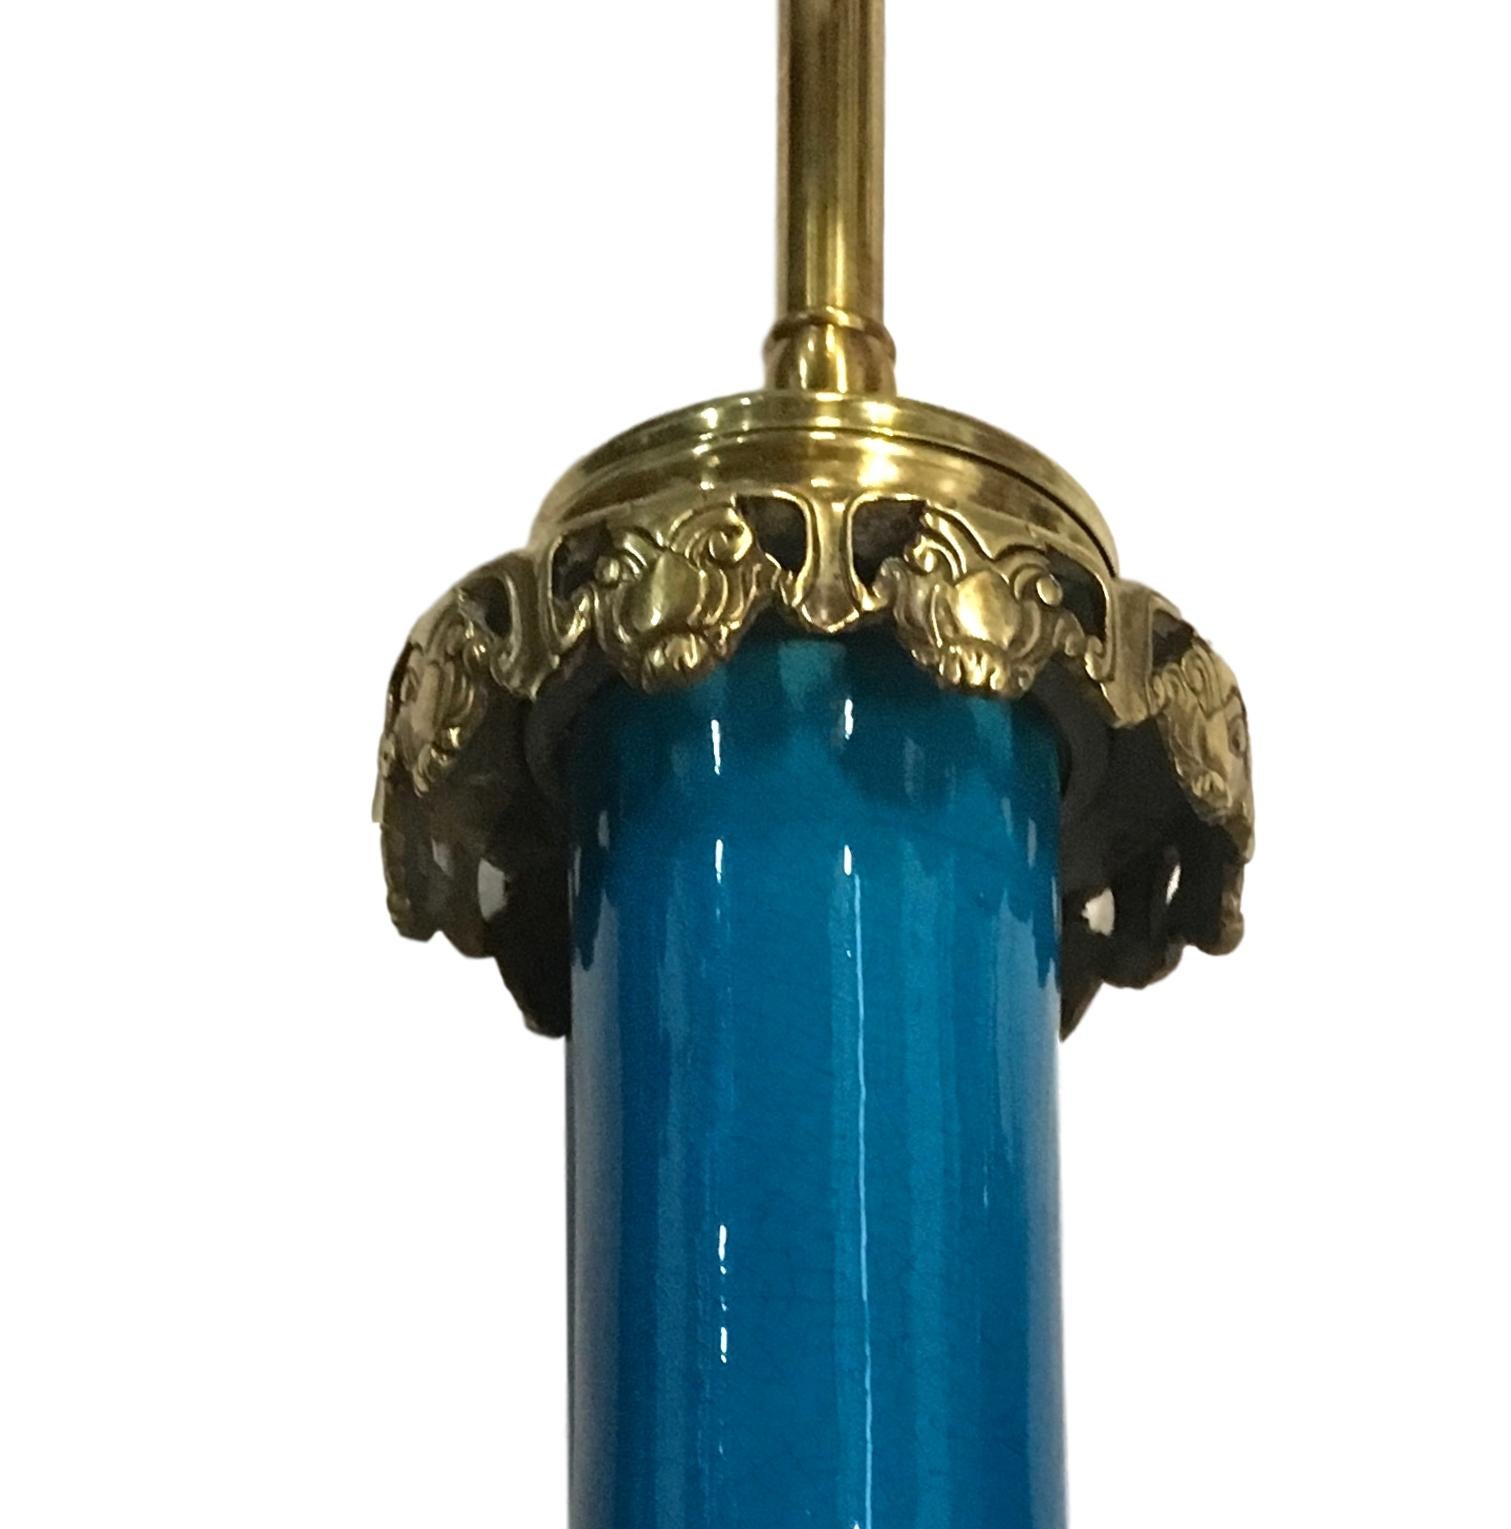 Ein Paar französischer Porzellan-Tischlampen aus den 1930er Jahren mit königsblauer Glasur und feinen, durchbrochenen Sockeln und Beschlägen aus vergoldeter Bronze.

Abmessungen:
Höhe des Körpers: 15